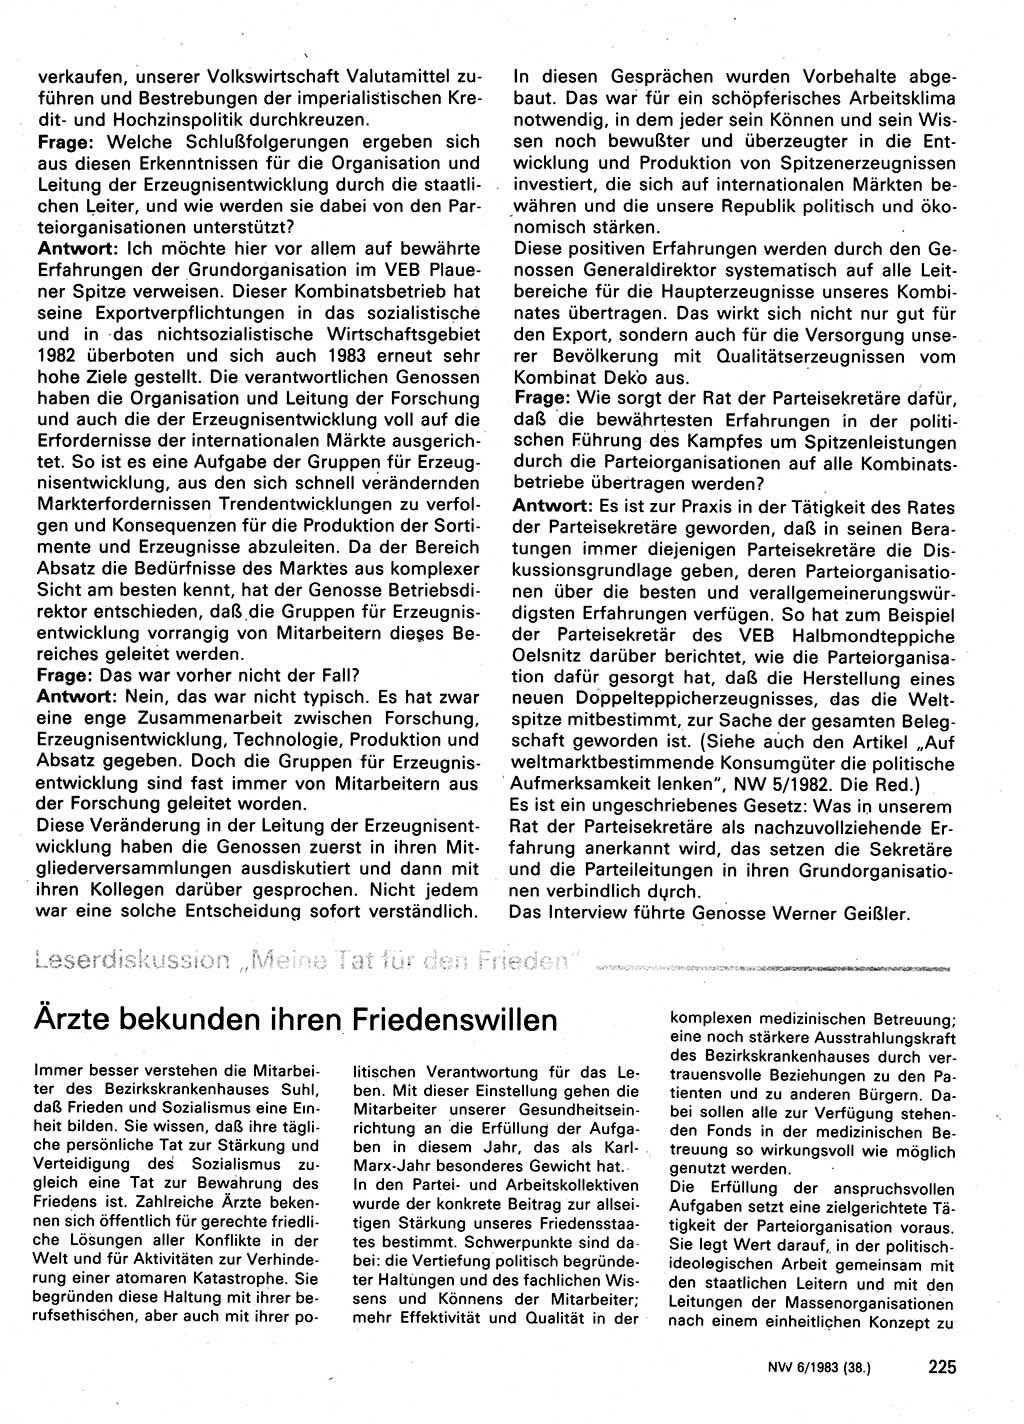 Neuer Weg (NW), Organ des Zentralkomitees (ZK) der SED (Sozialistische Einheitspartei Deutschlands) für Fragen des Parteilebens, 38. Jahrgang [Deutsche Demokratische Republik (DDR)] 1983, Seite 225 (NW ZK SED DDR 1983, S. 225)